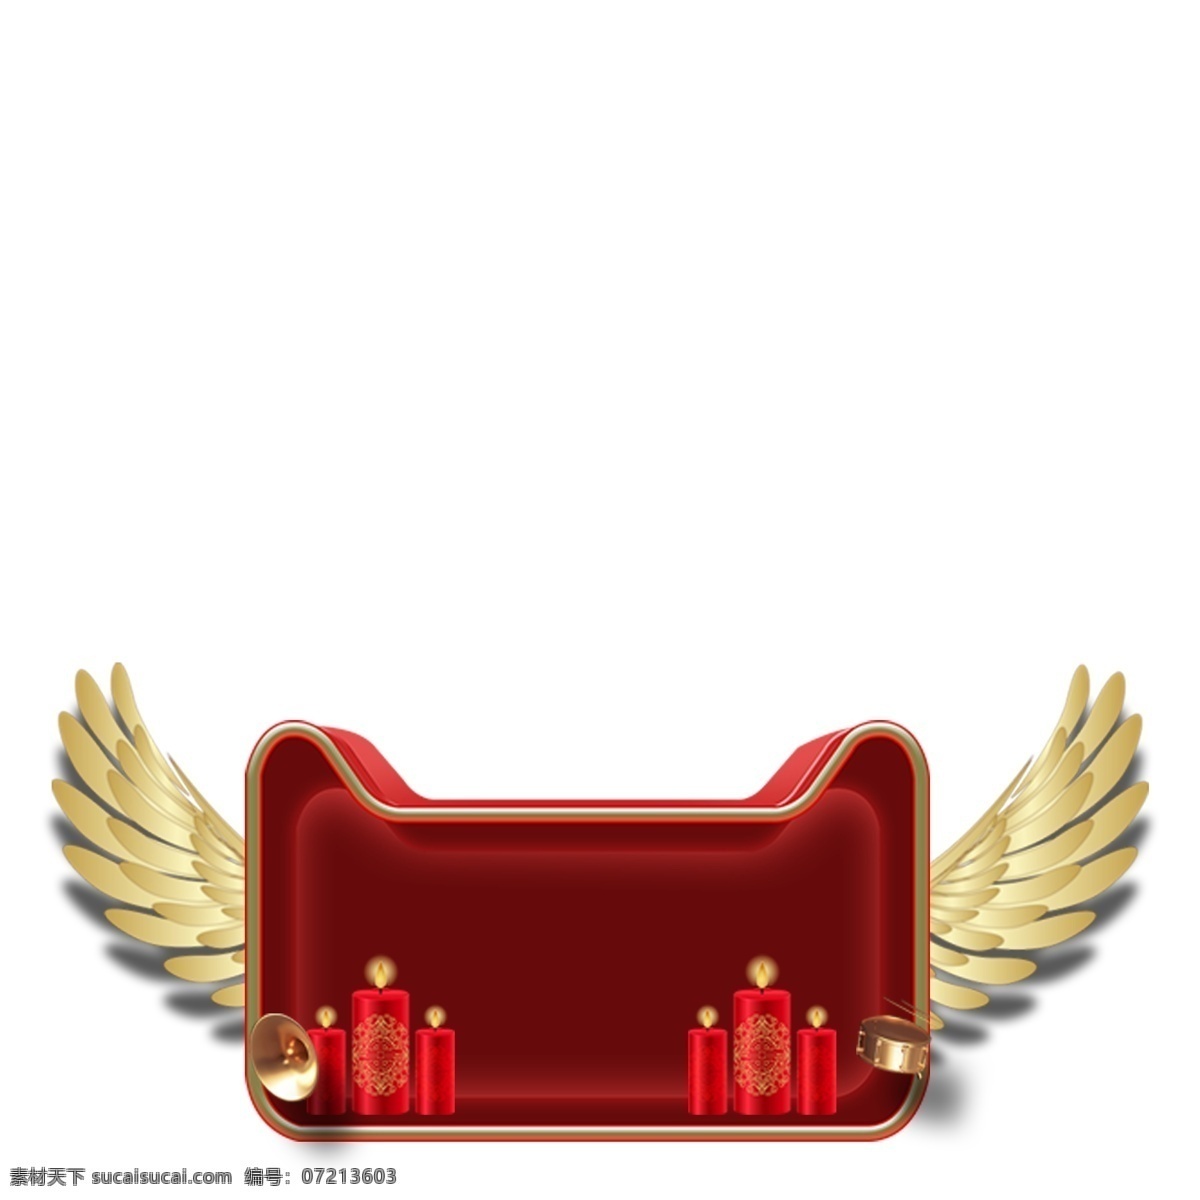 卡通 天猫 标志 免 抠 图 天猫标志 红色的礼盒 卡通图案 卡通插画 漂亮的翅膀 礼盒 黄色 翅膀 免抠图